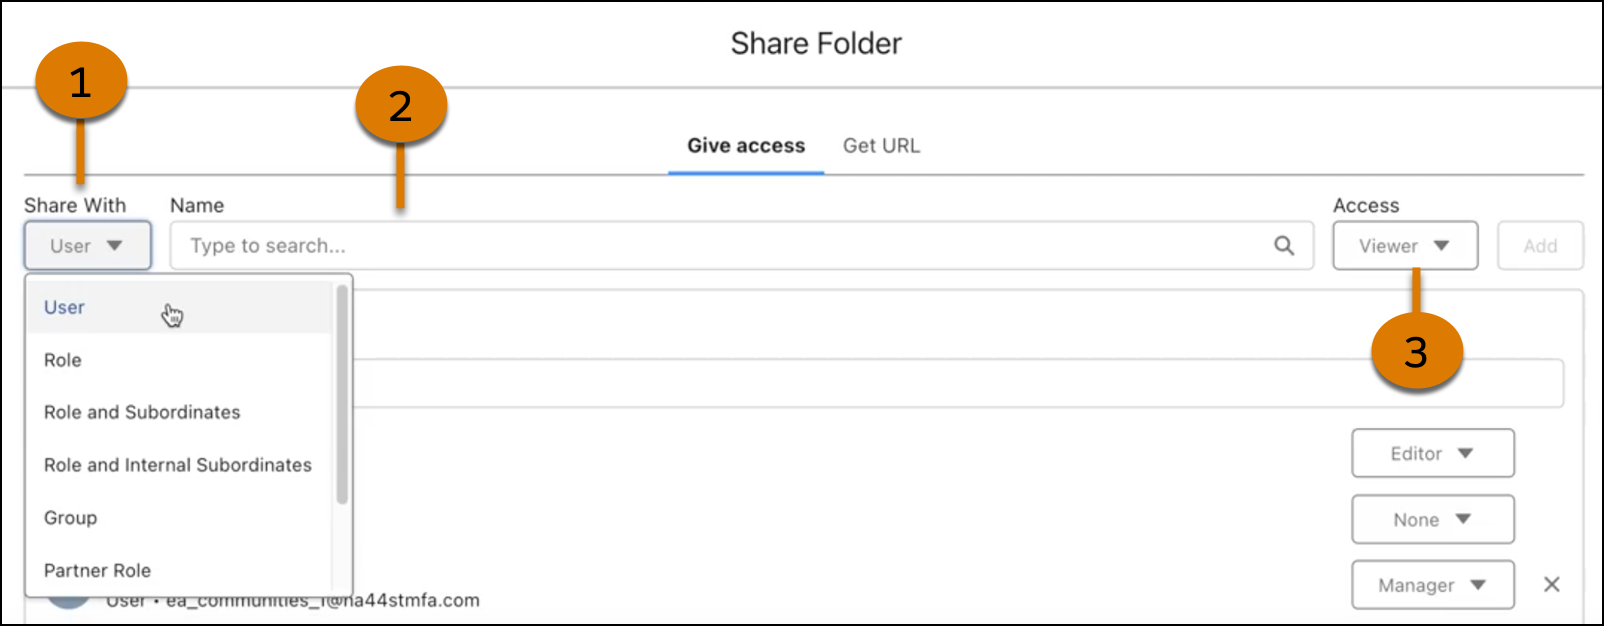 Share folder properties